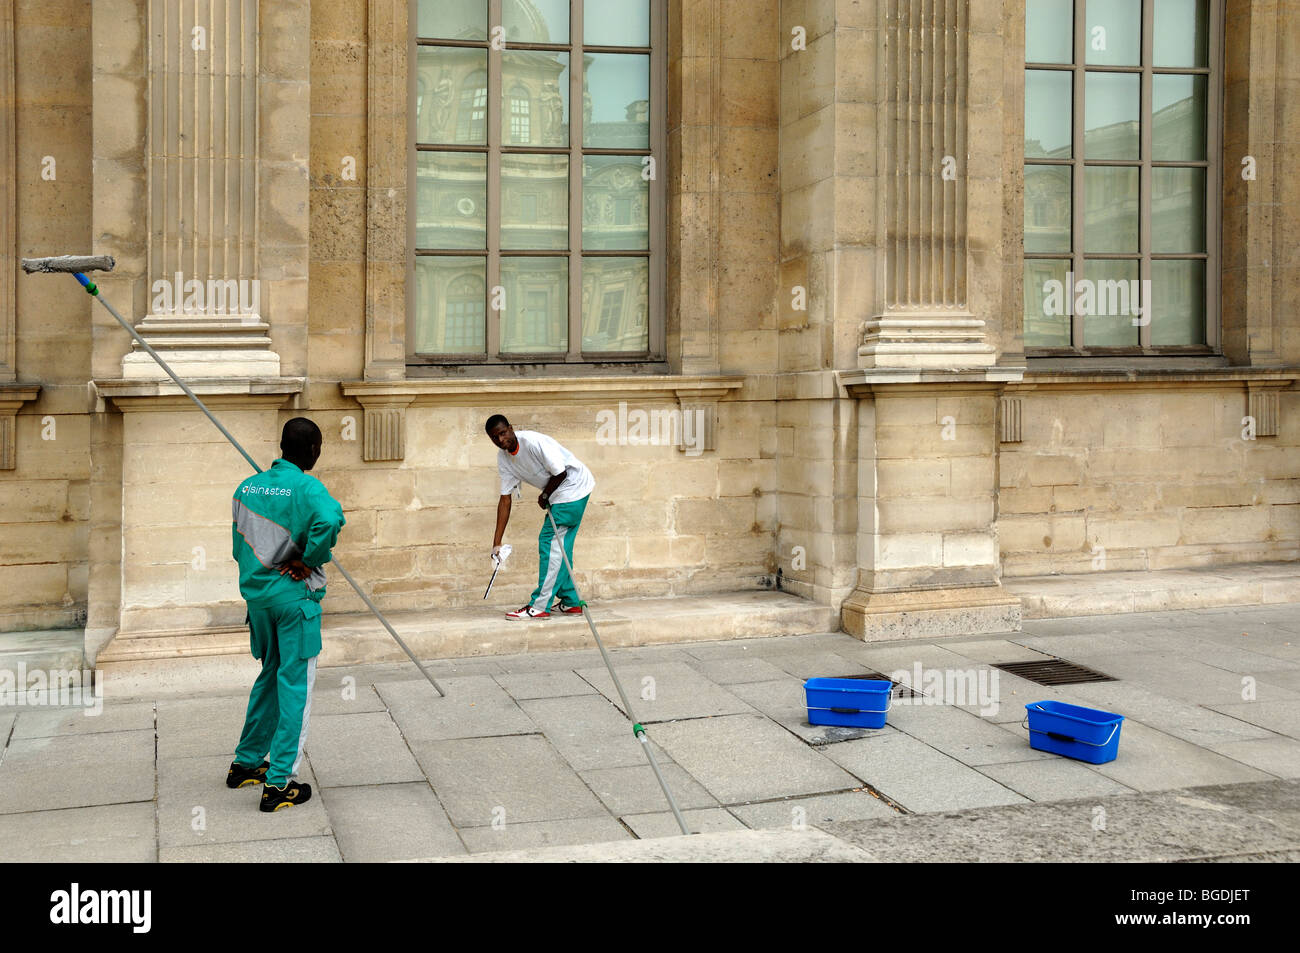 Trabajadores inmigrantes africanos, trabajadores extranjeros o extranjeros limpiando ventanas del Museo del Louvre, París, Francia Foto de stock